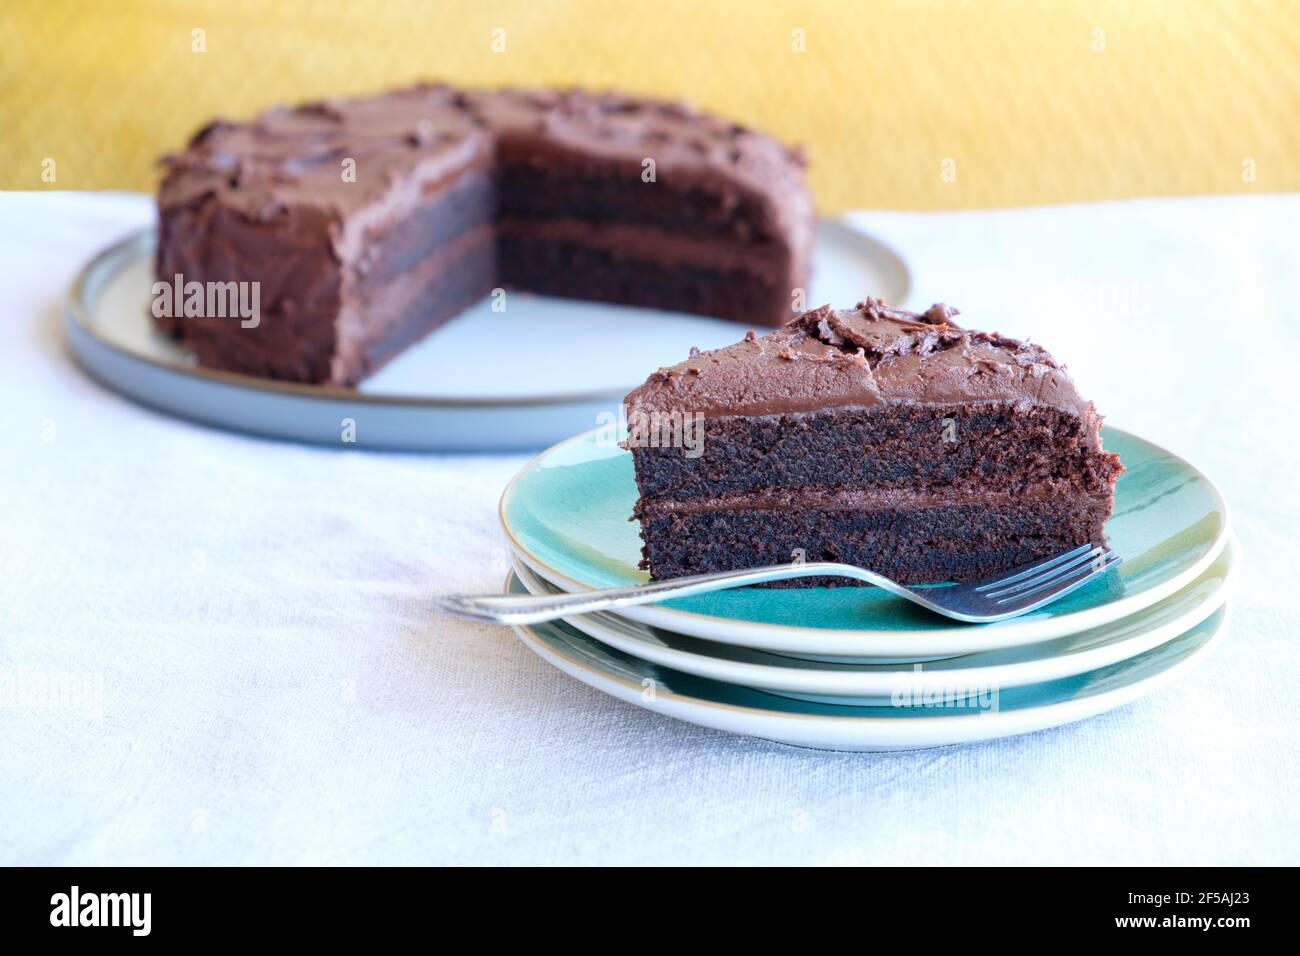 Ein Stück oder ein Teil des hausgemachten reichen, feuchten Schokoladenkuchen auf einem Teller. Die Tortenscheibe hat eine Schokoladencreme-Füllung und einen dicken Schokoladenüberzug Stockfoto